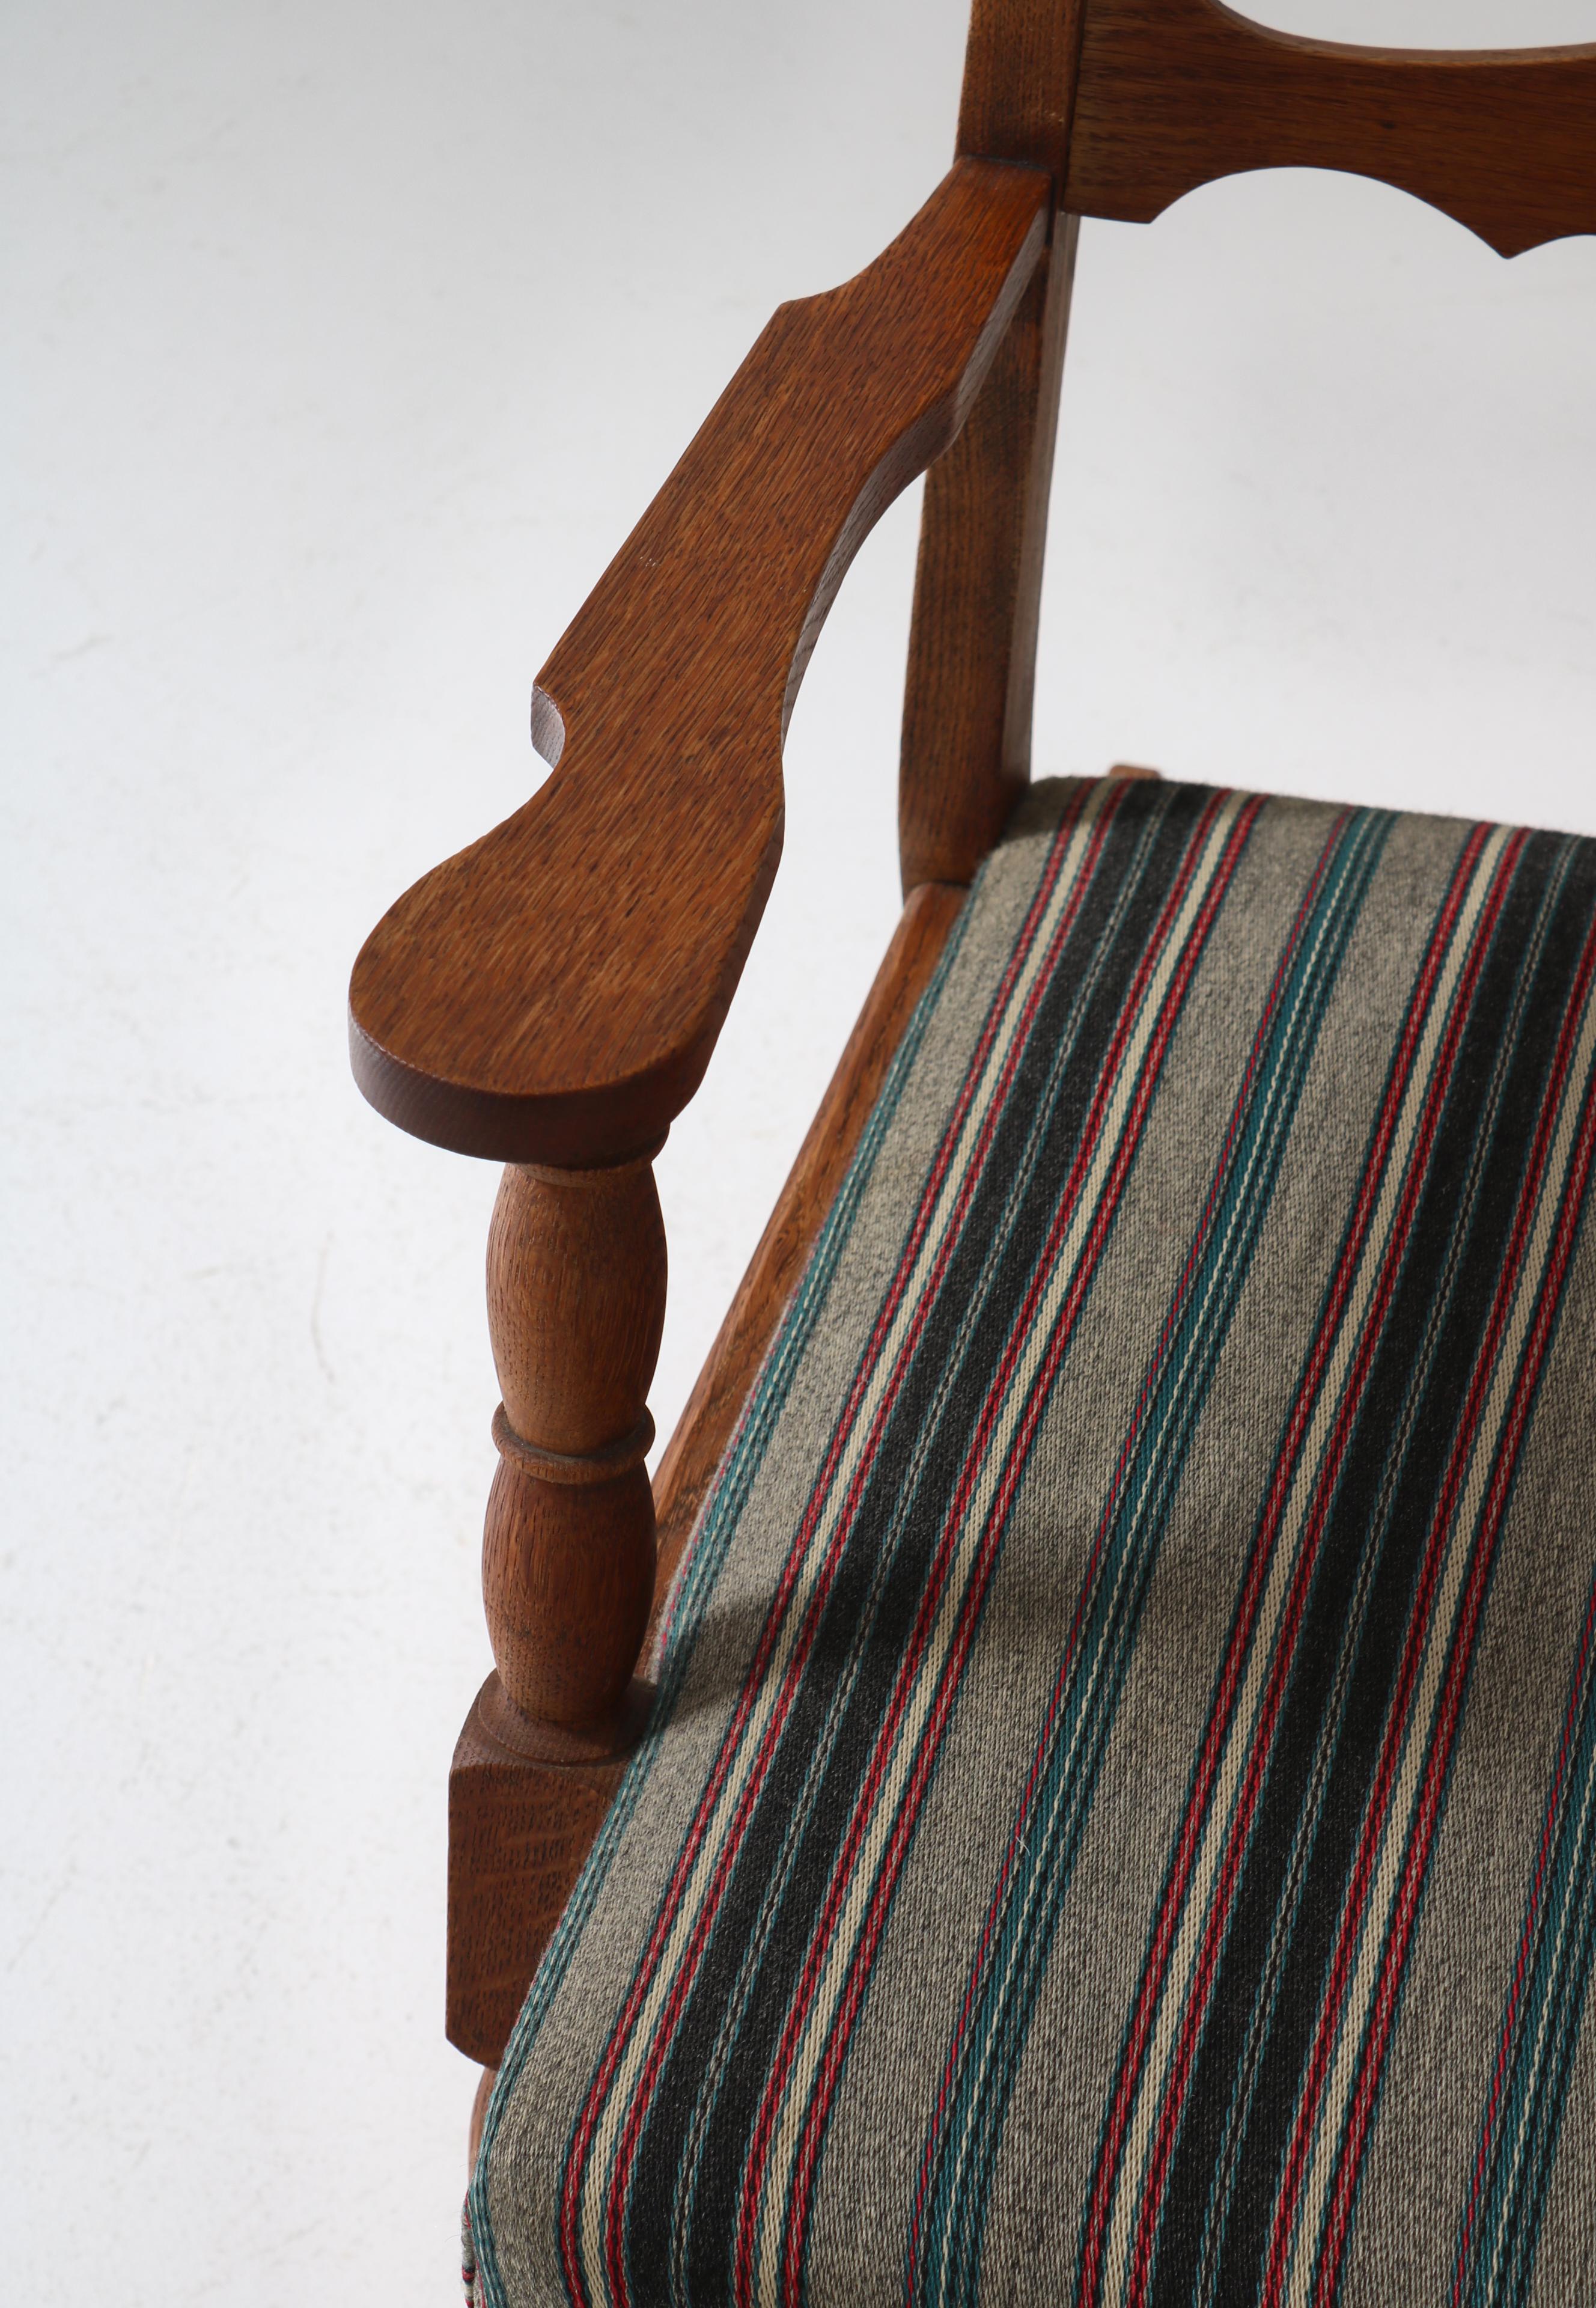 1950s Rocking Chair in Oak & Wool Fabric by Henry Kjærnulff, Danish Modern For Sale 1